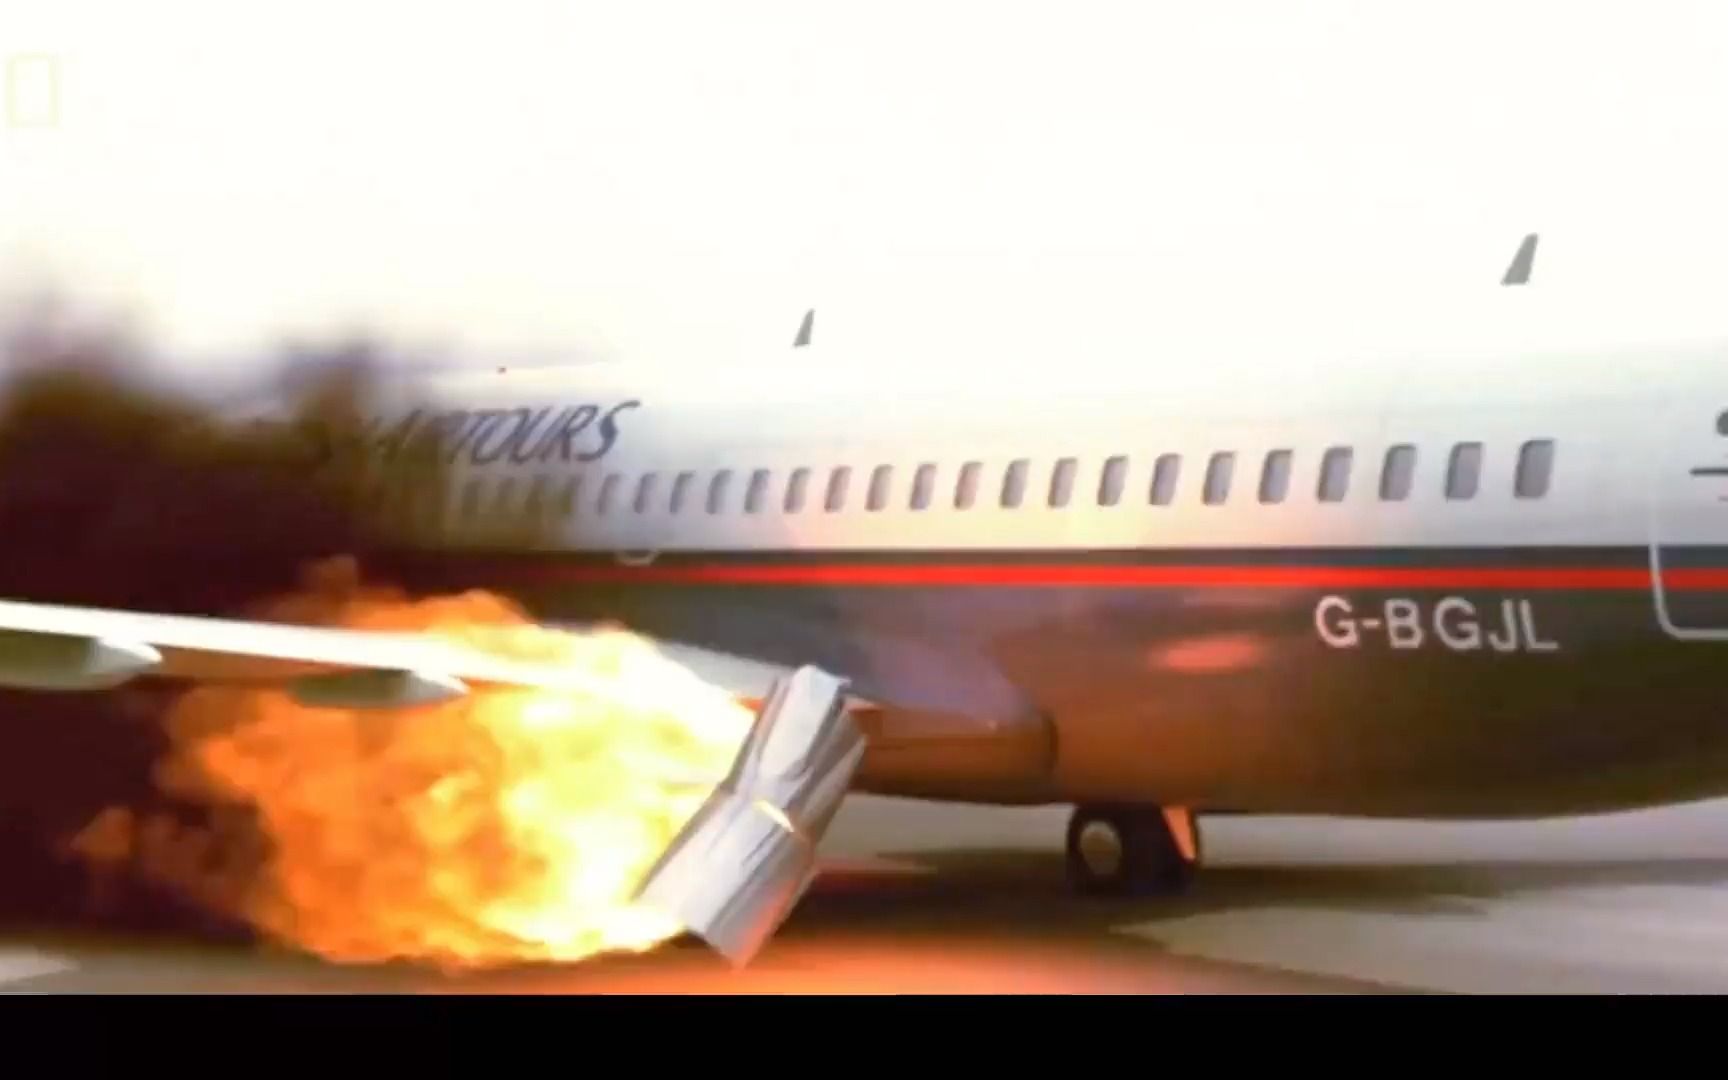 飞机引擎起火,飞机稳稳停在地面后竟然依旧造成如此严重的伤亡